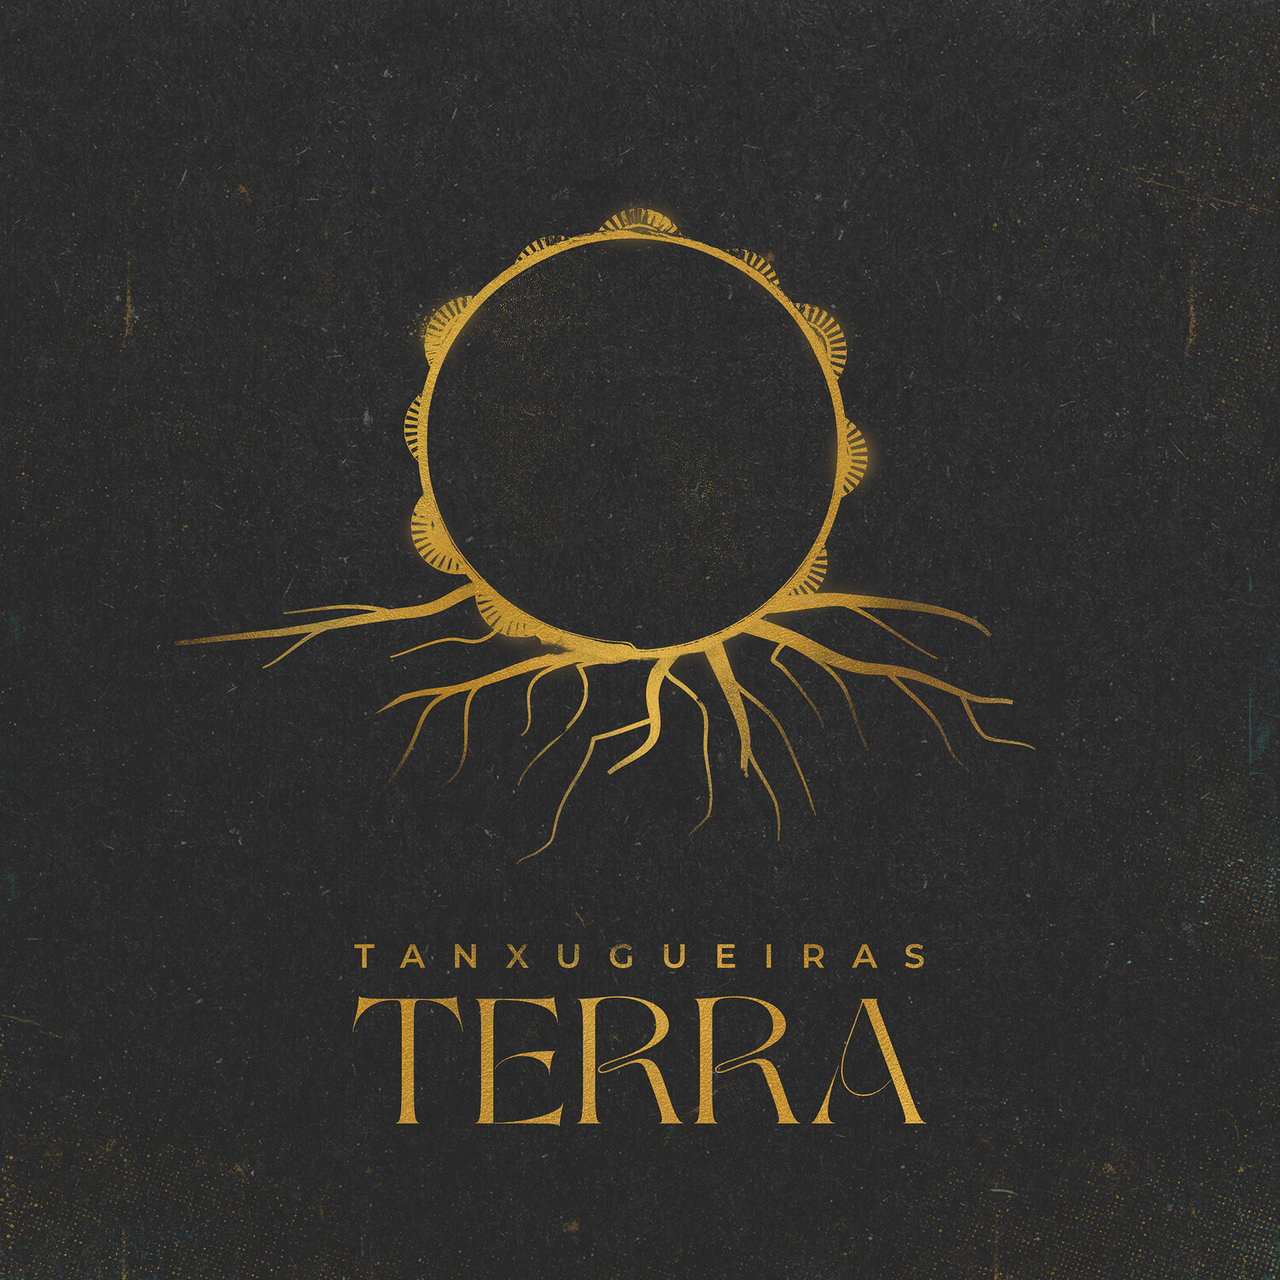 Tanxugueiras — Terra cover artwork